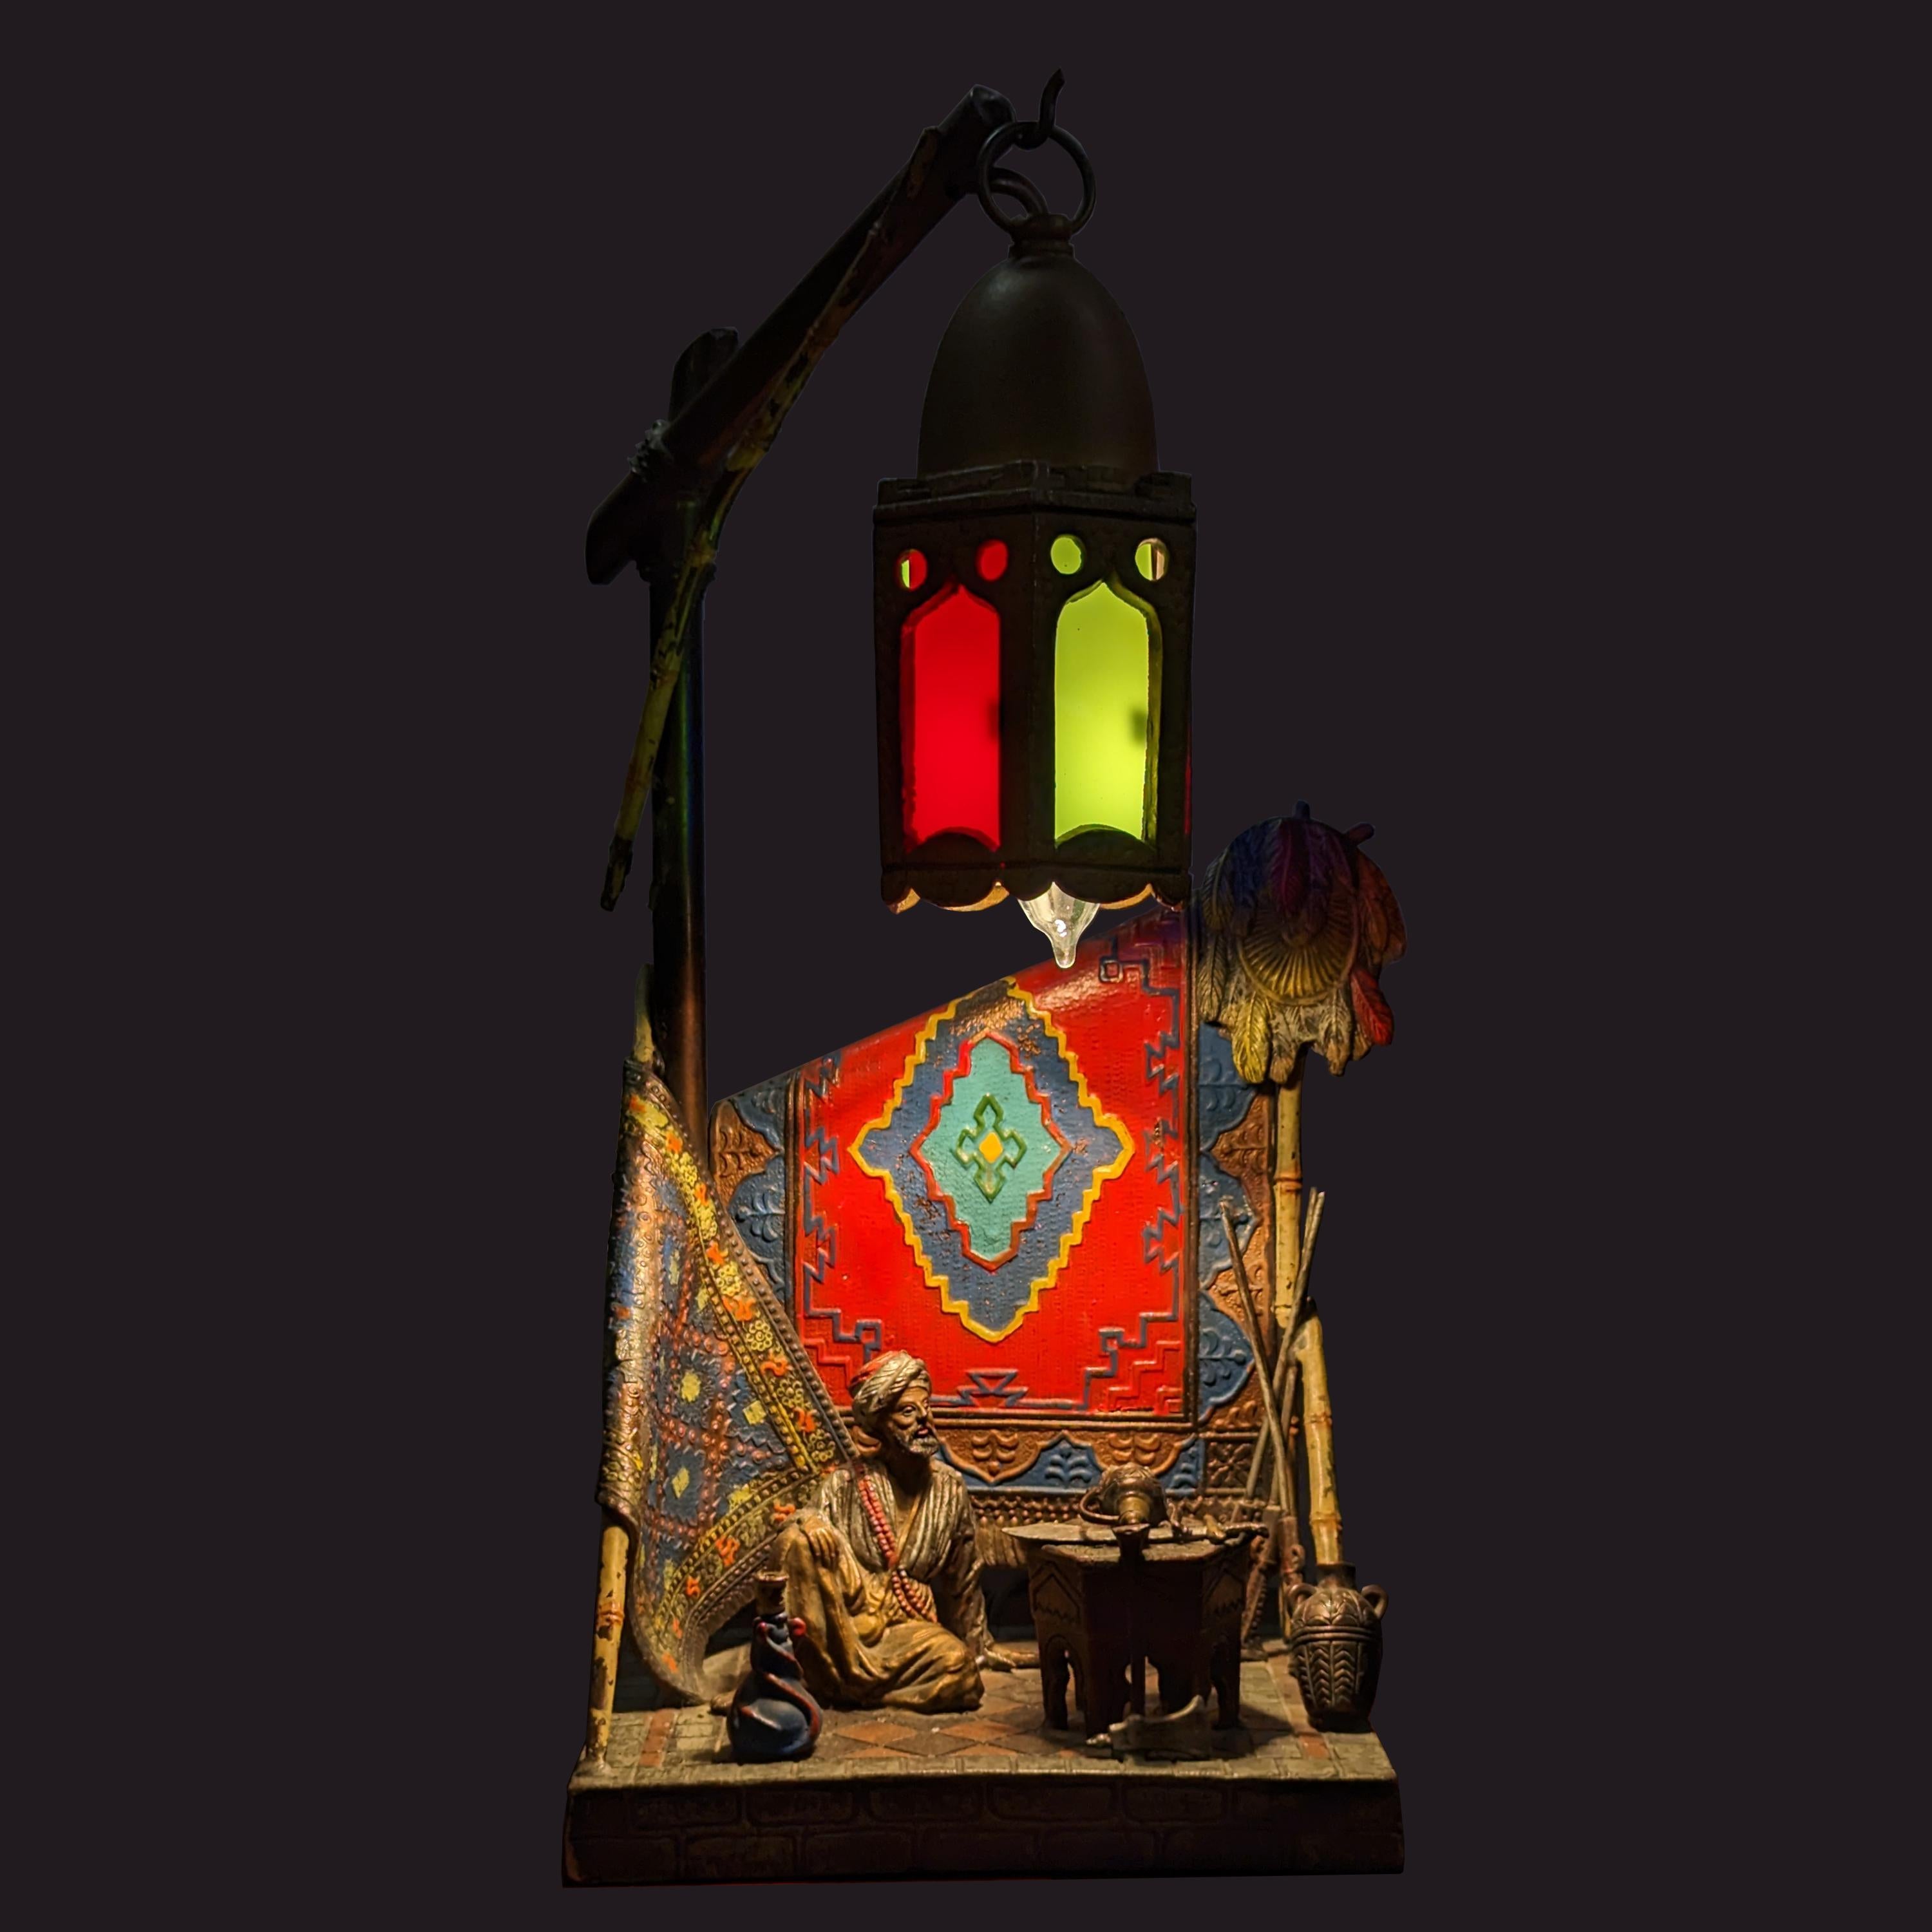 Eine gute antike österreichische Bronze/Spelter-Lampe im Stil von Franz Bergmann, arabischer Teppichverkäufer, um 1920.
Die Leuchte wurde gerade professionell neu verkabelt, um den Vorschriften zu entsprechen. Die Lampe zeigt einen sitzenden